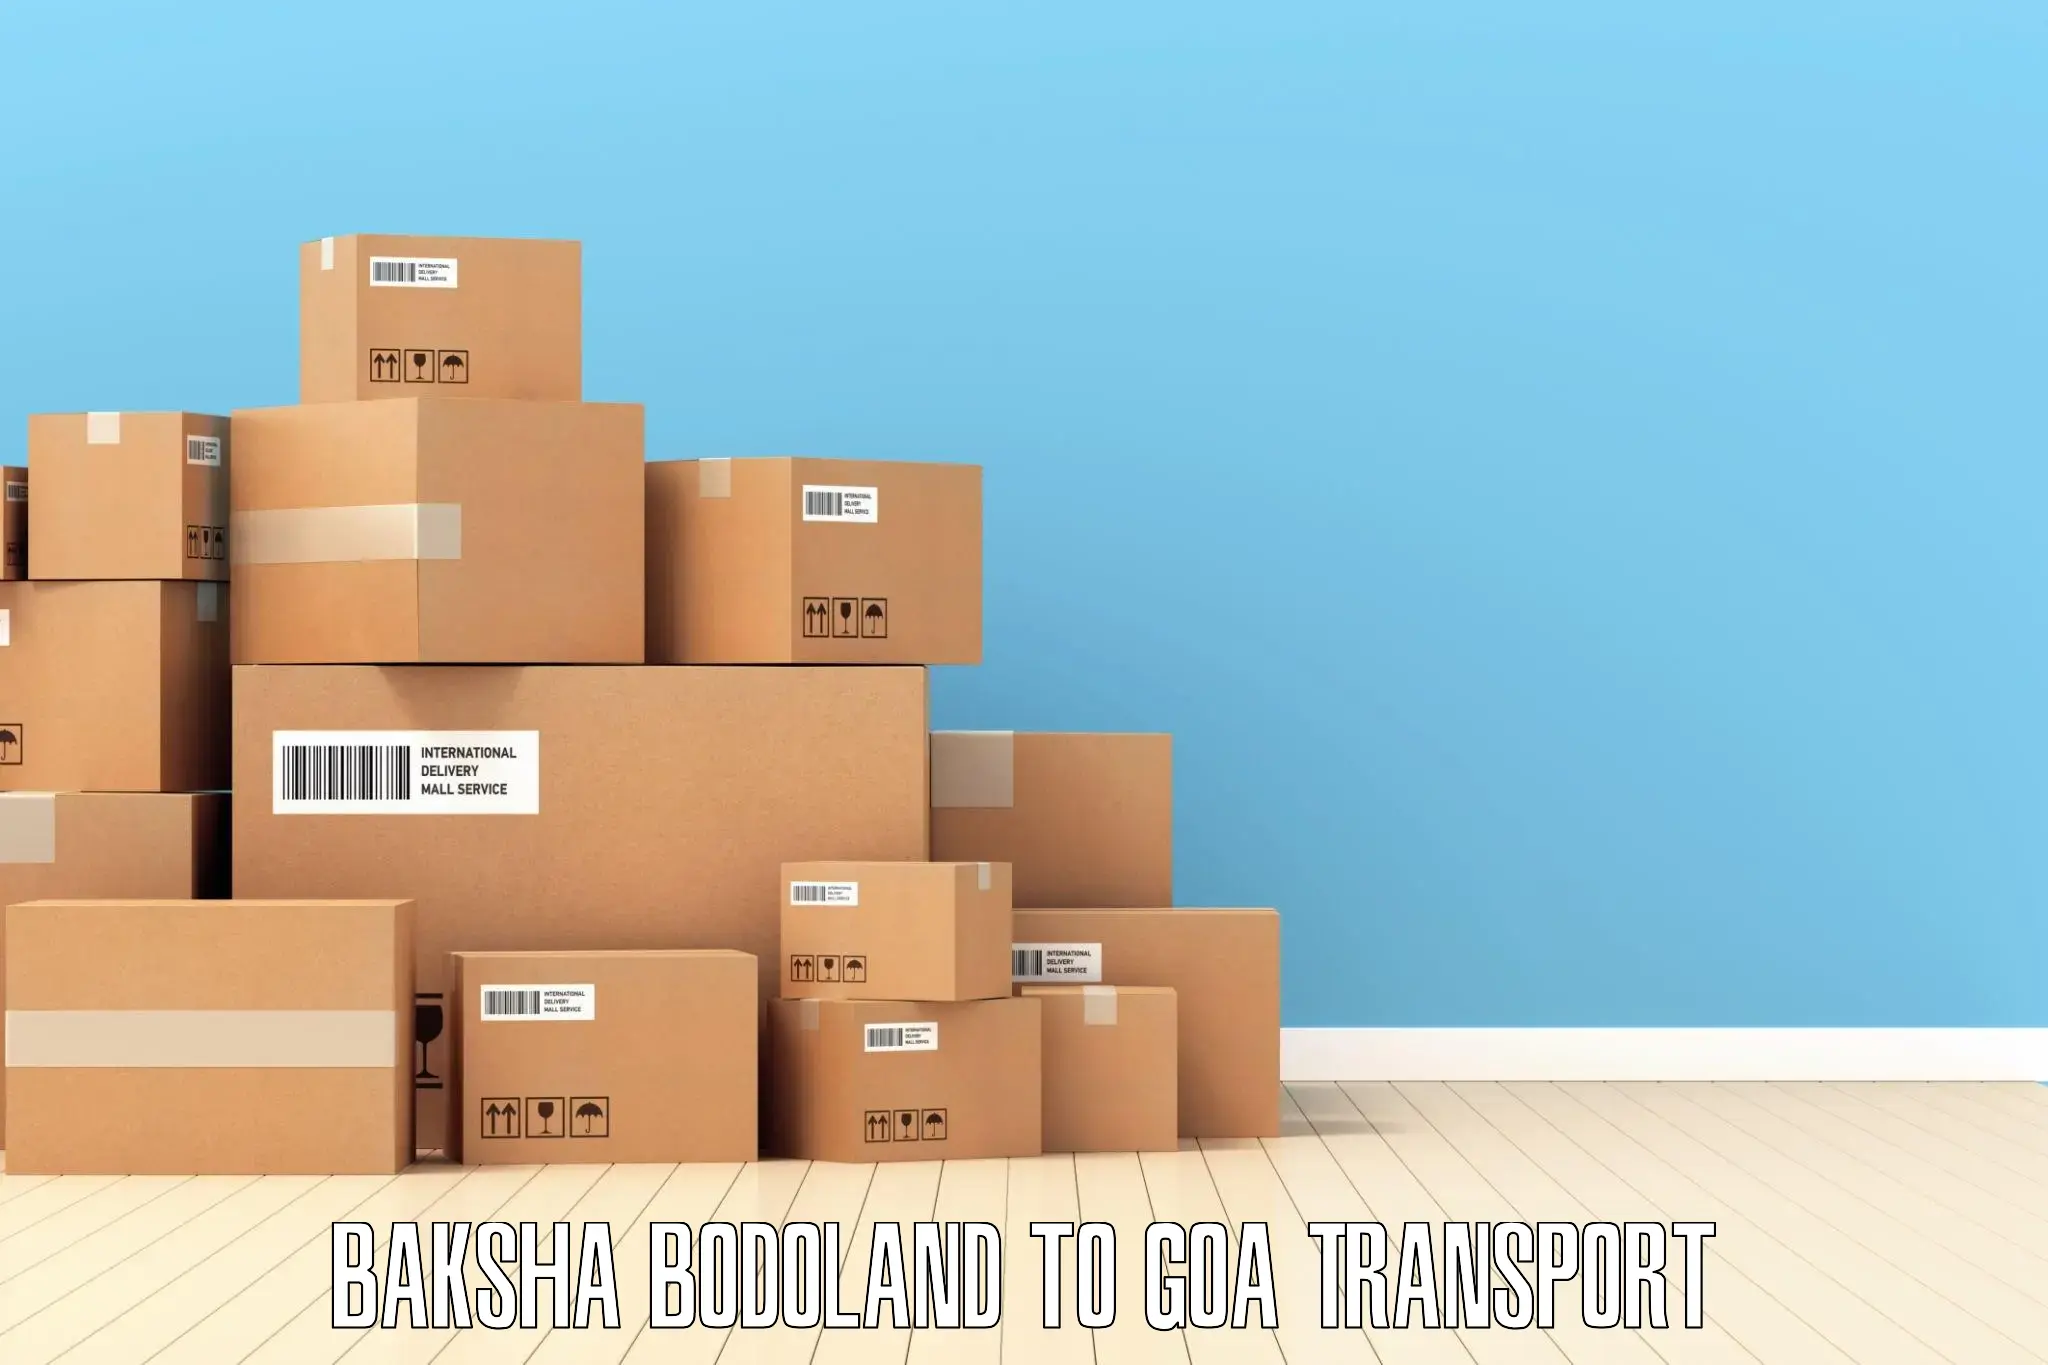 Interstate goods transport Baksha Bodoland to Vasco da Gama